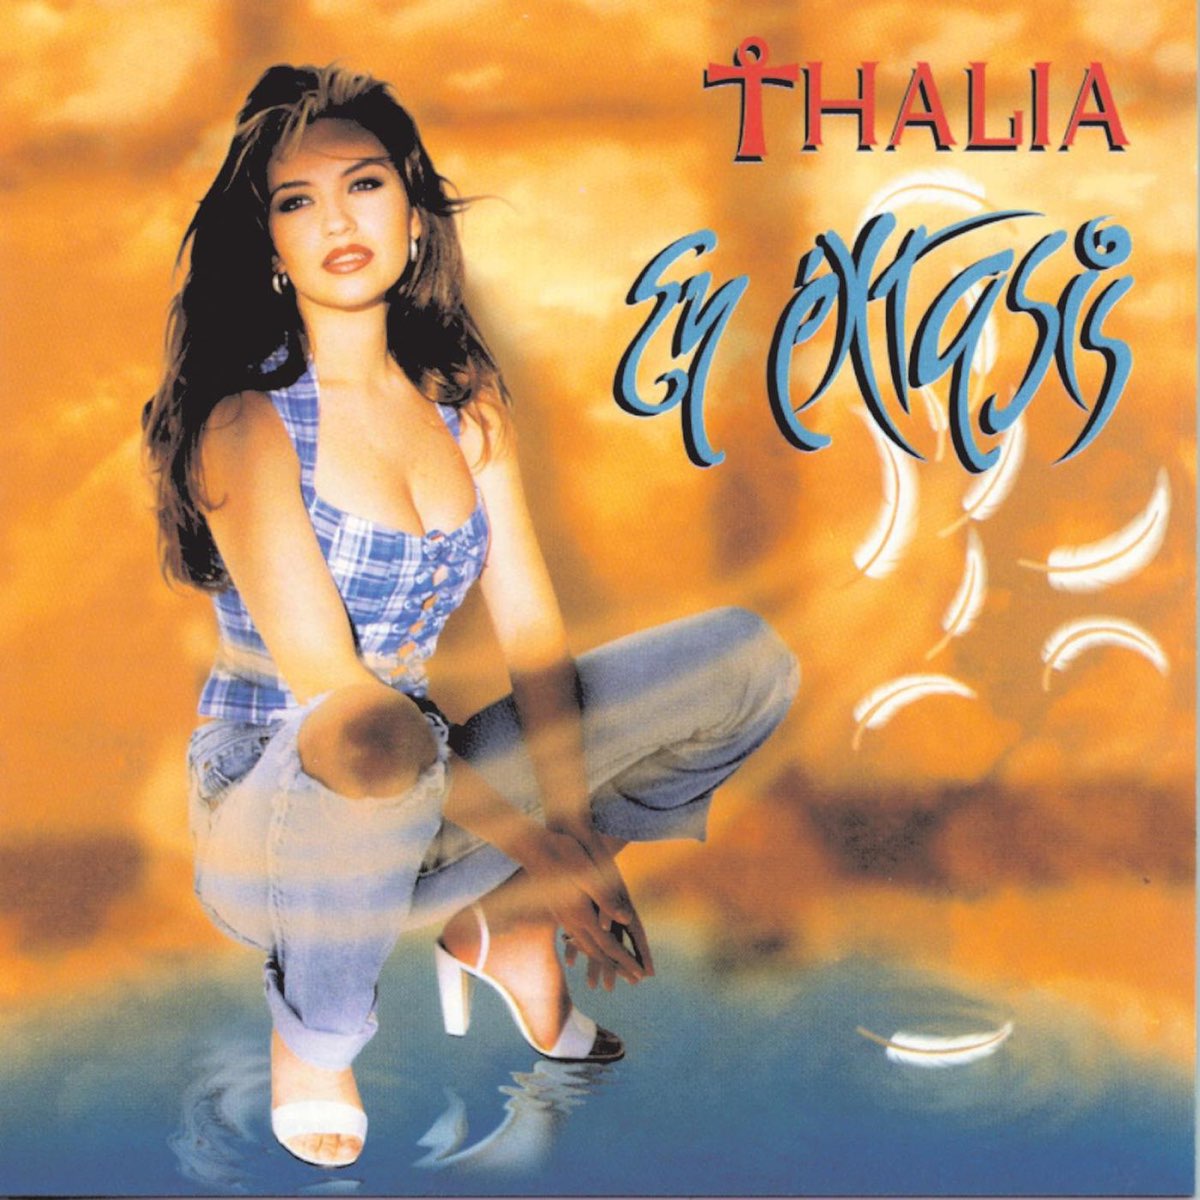 Thalía — Amándote cover artwork